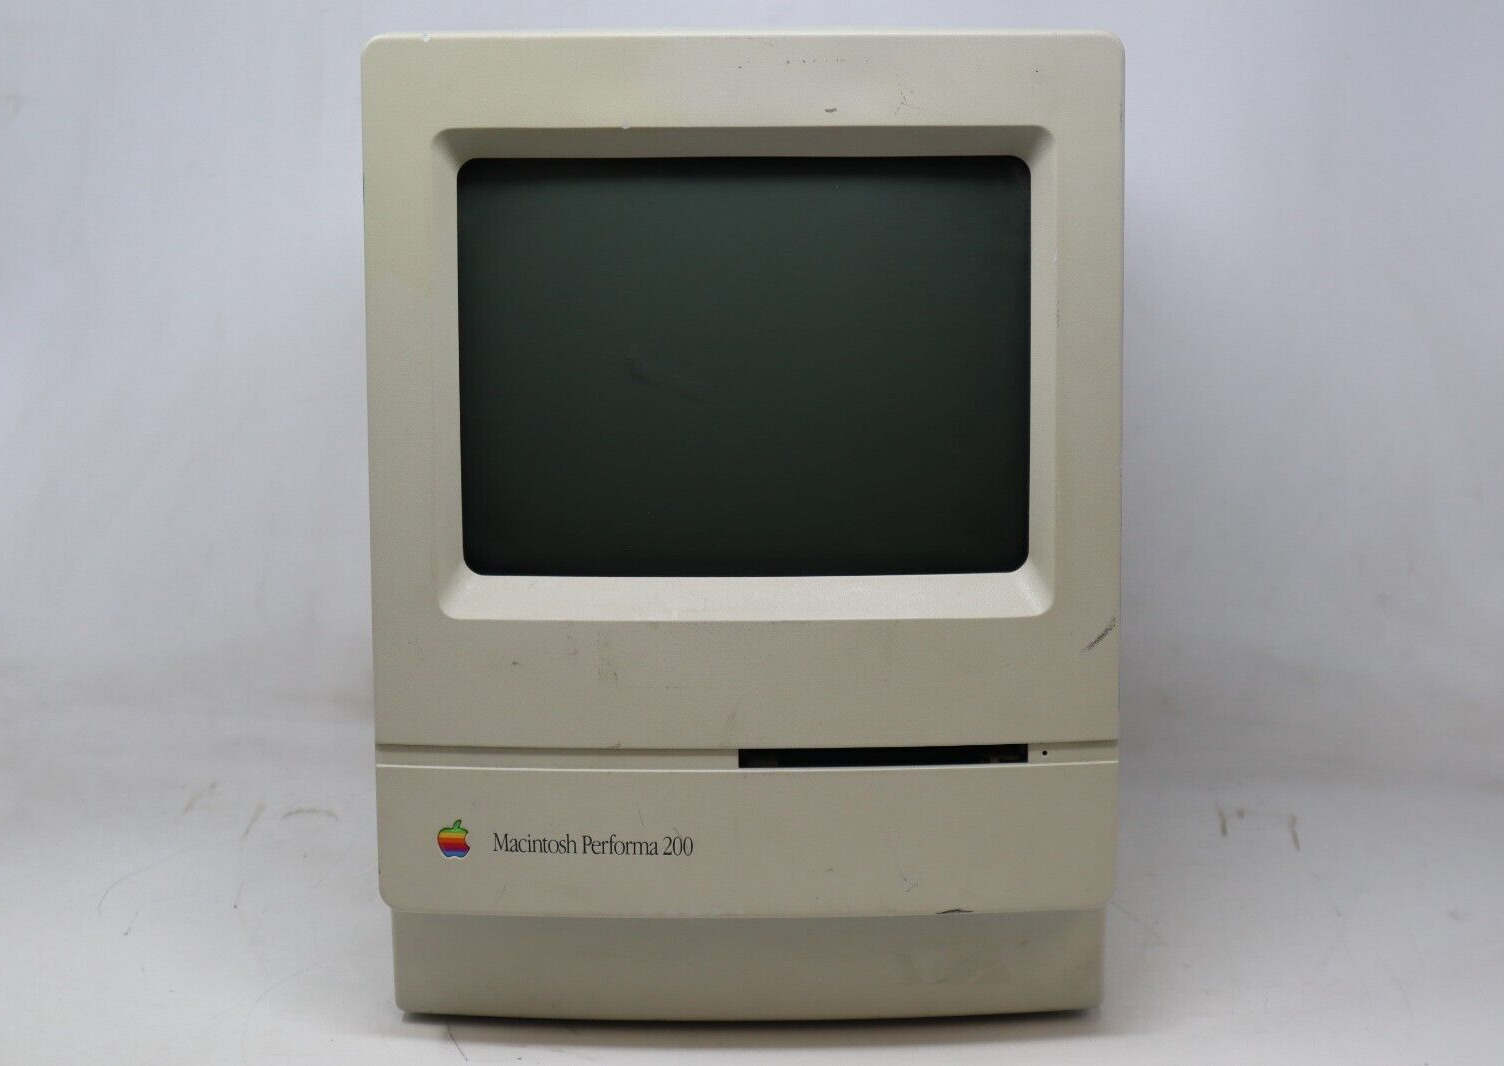 Apple | Macintosh Performa 200 | Vintage Personal Computer | Beige Casing